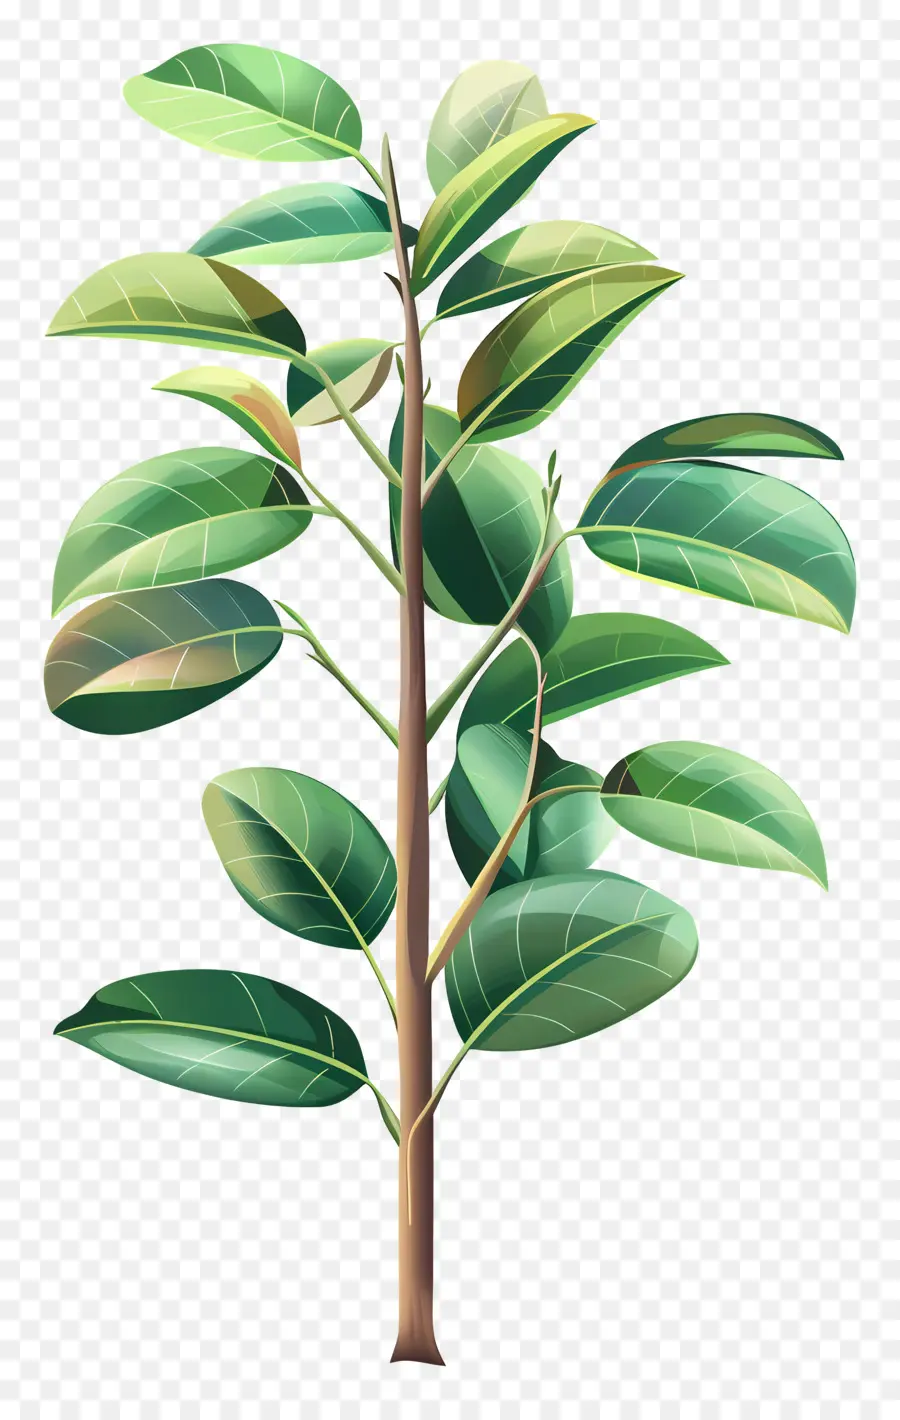 cây cao su - Hình minh họa cây xanh thực tế, với nền đen